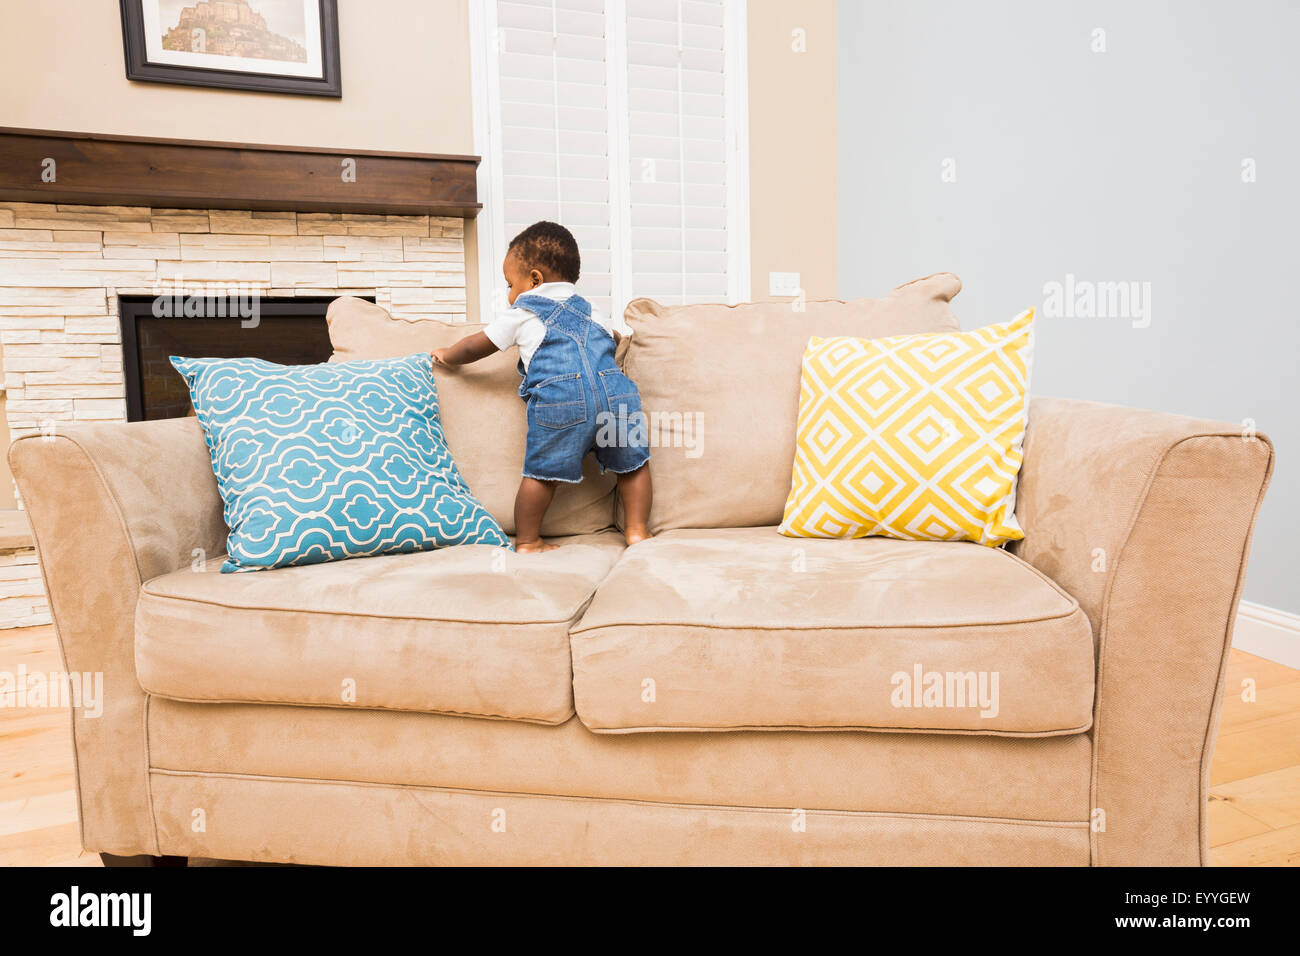 Bébé noir escalade sur le canapé dans la salle de séjour Photo Stock - Alamy